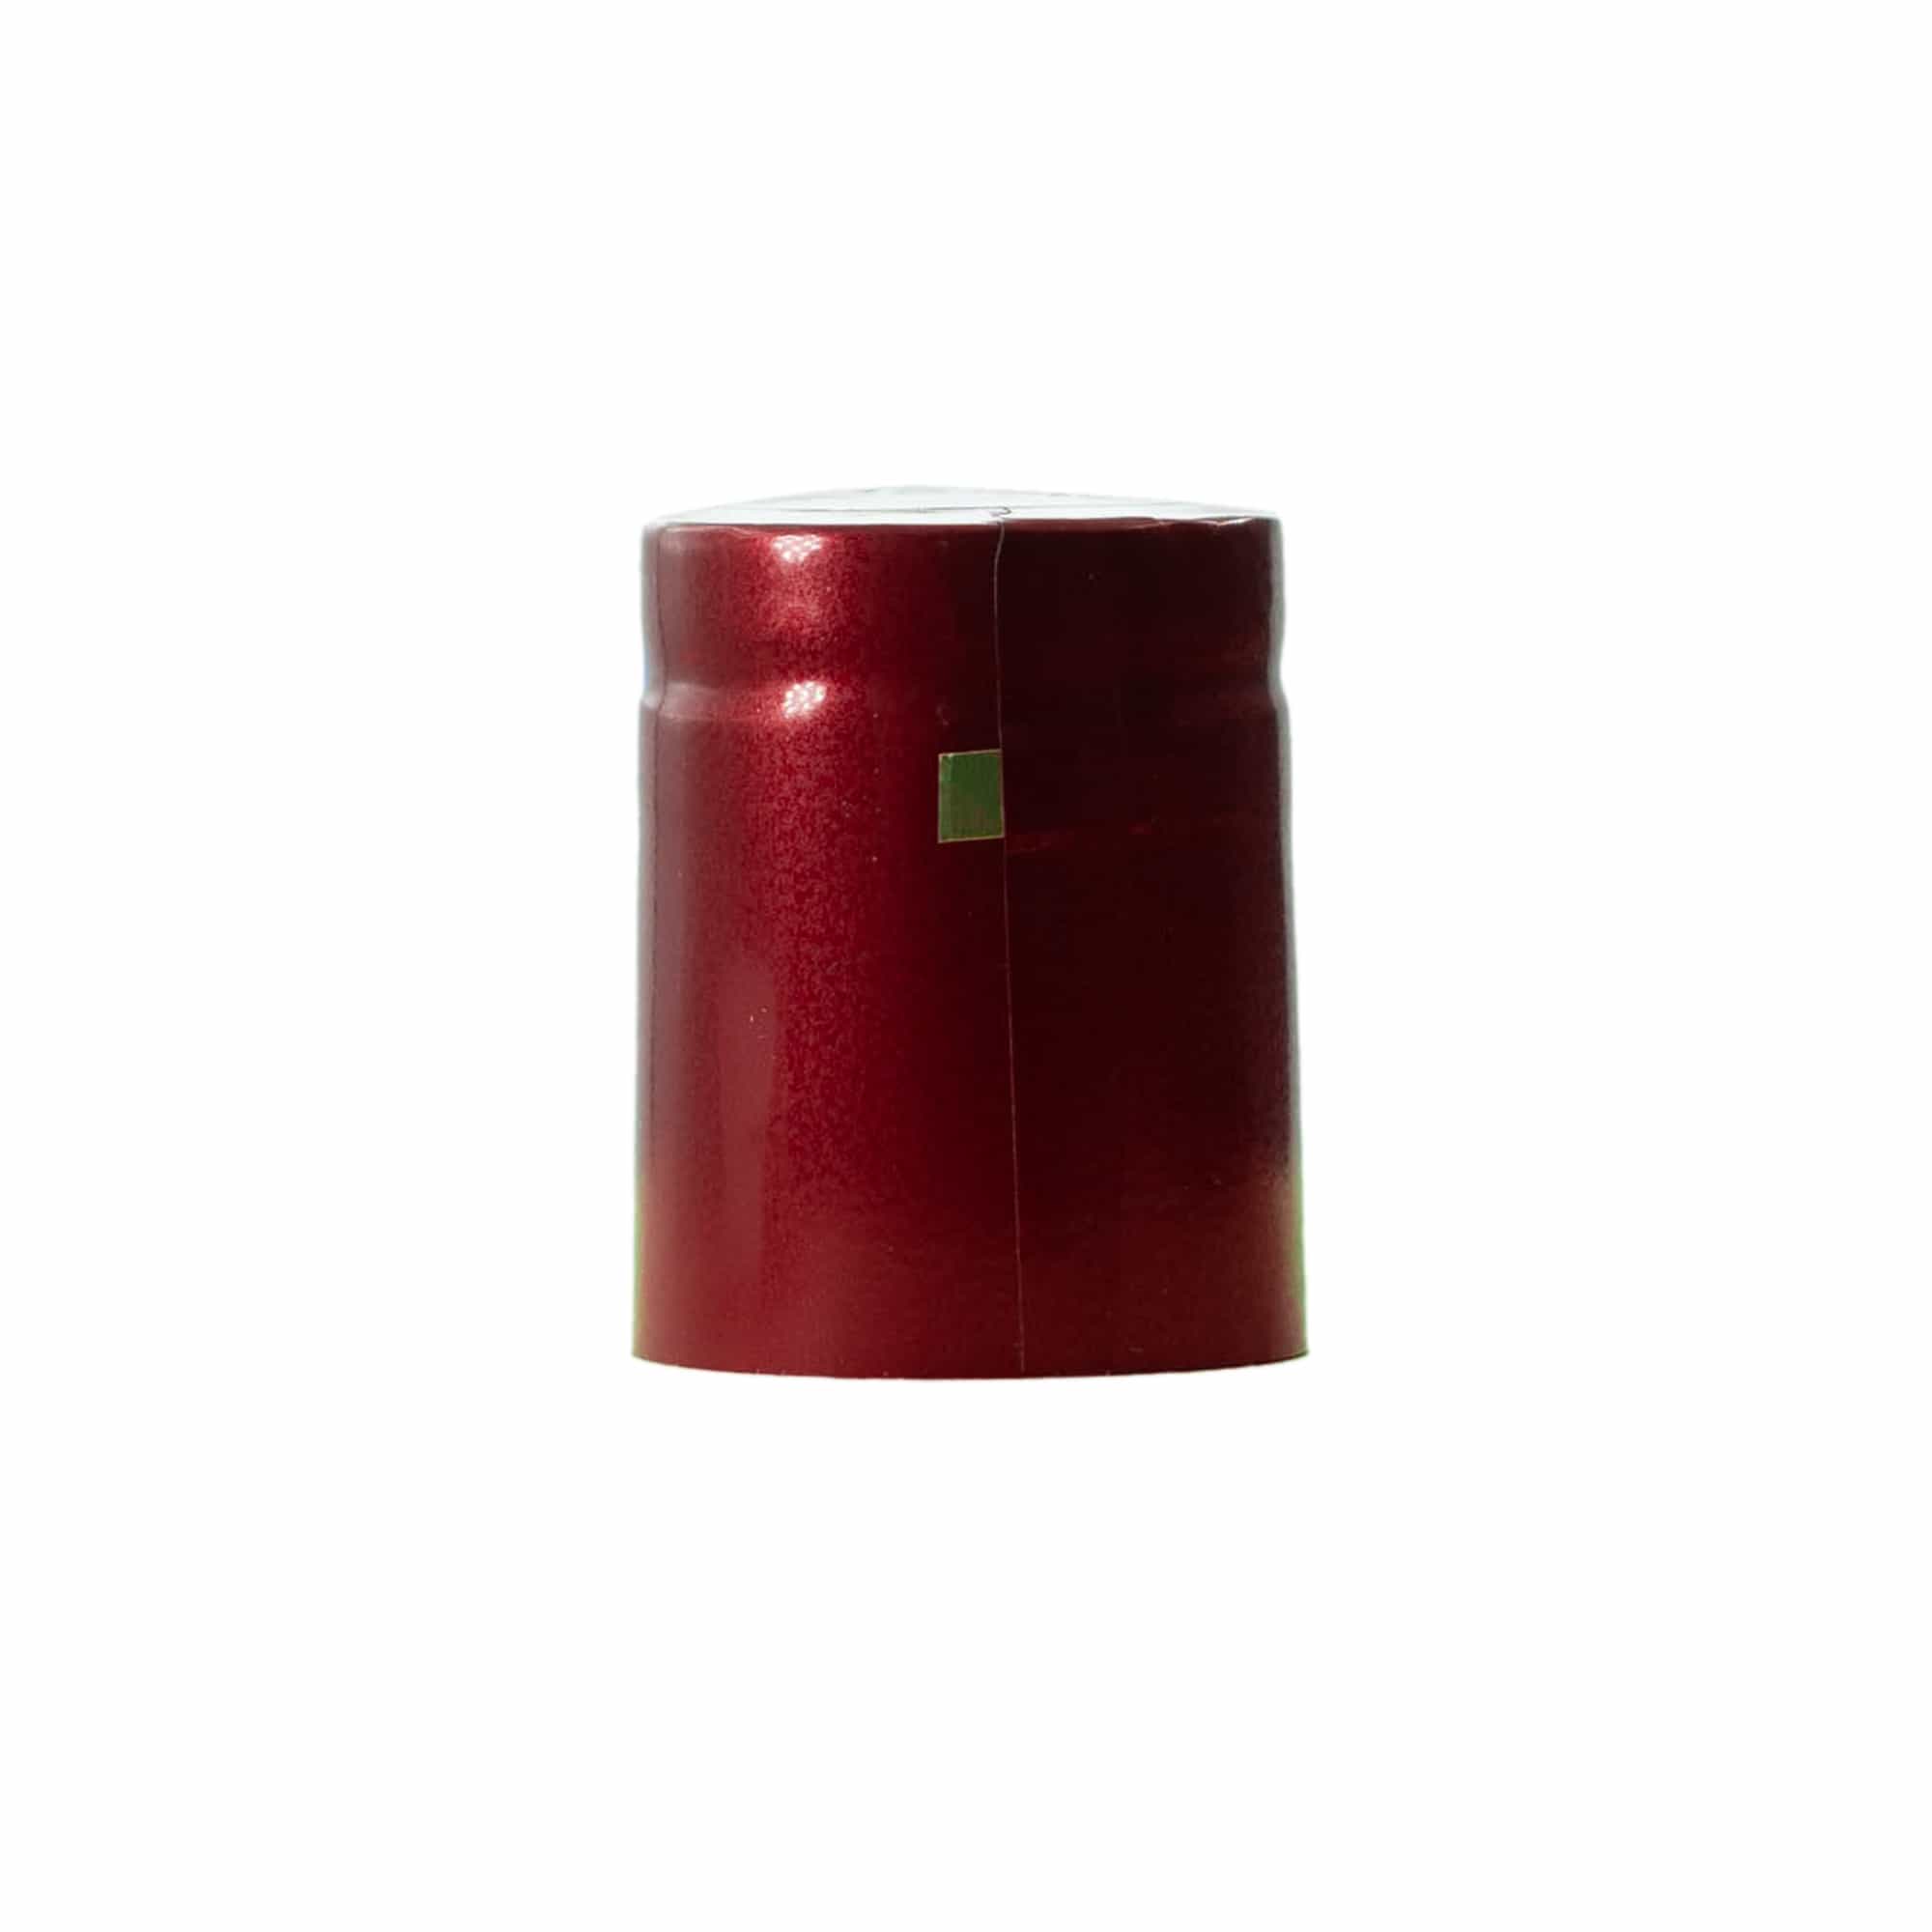 Capsule thermo-rétractable 32x41, plastique PVC, rouge bordeaux